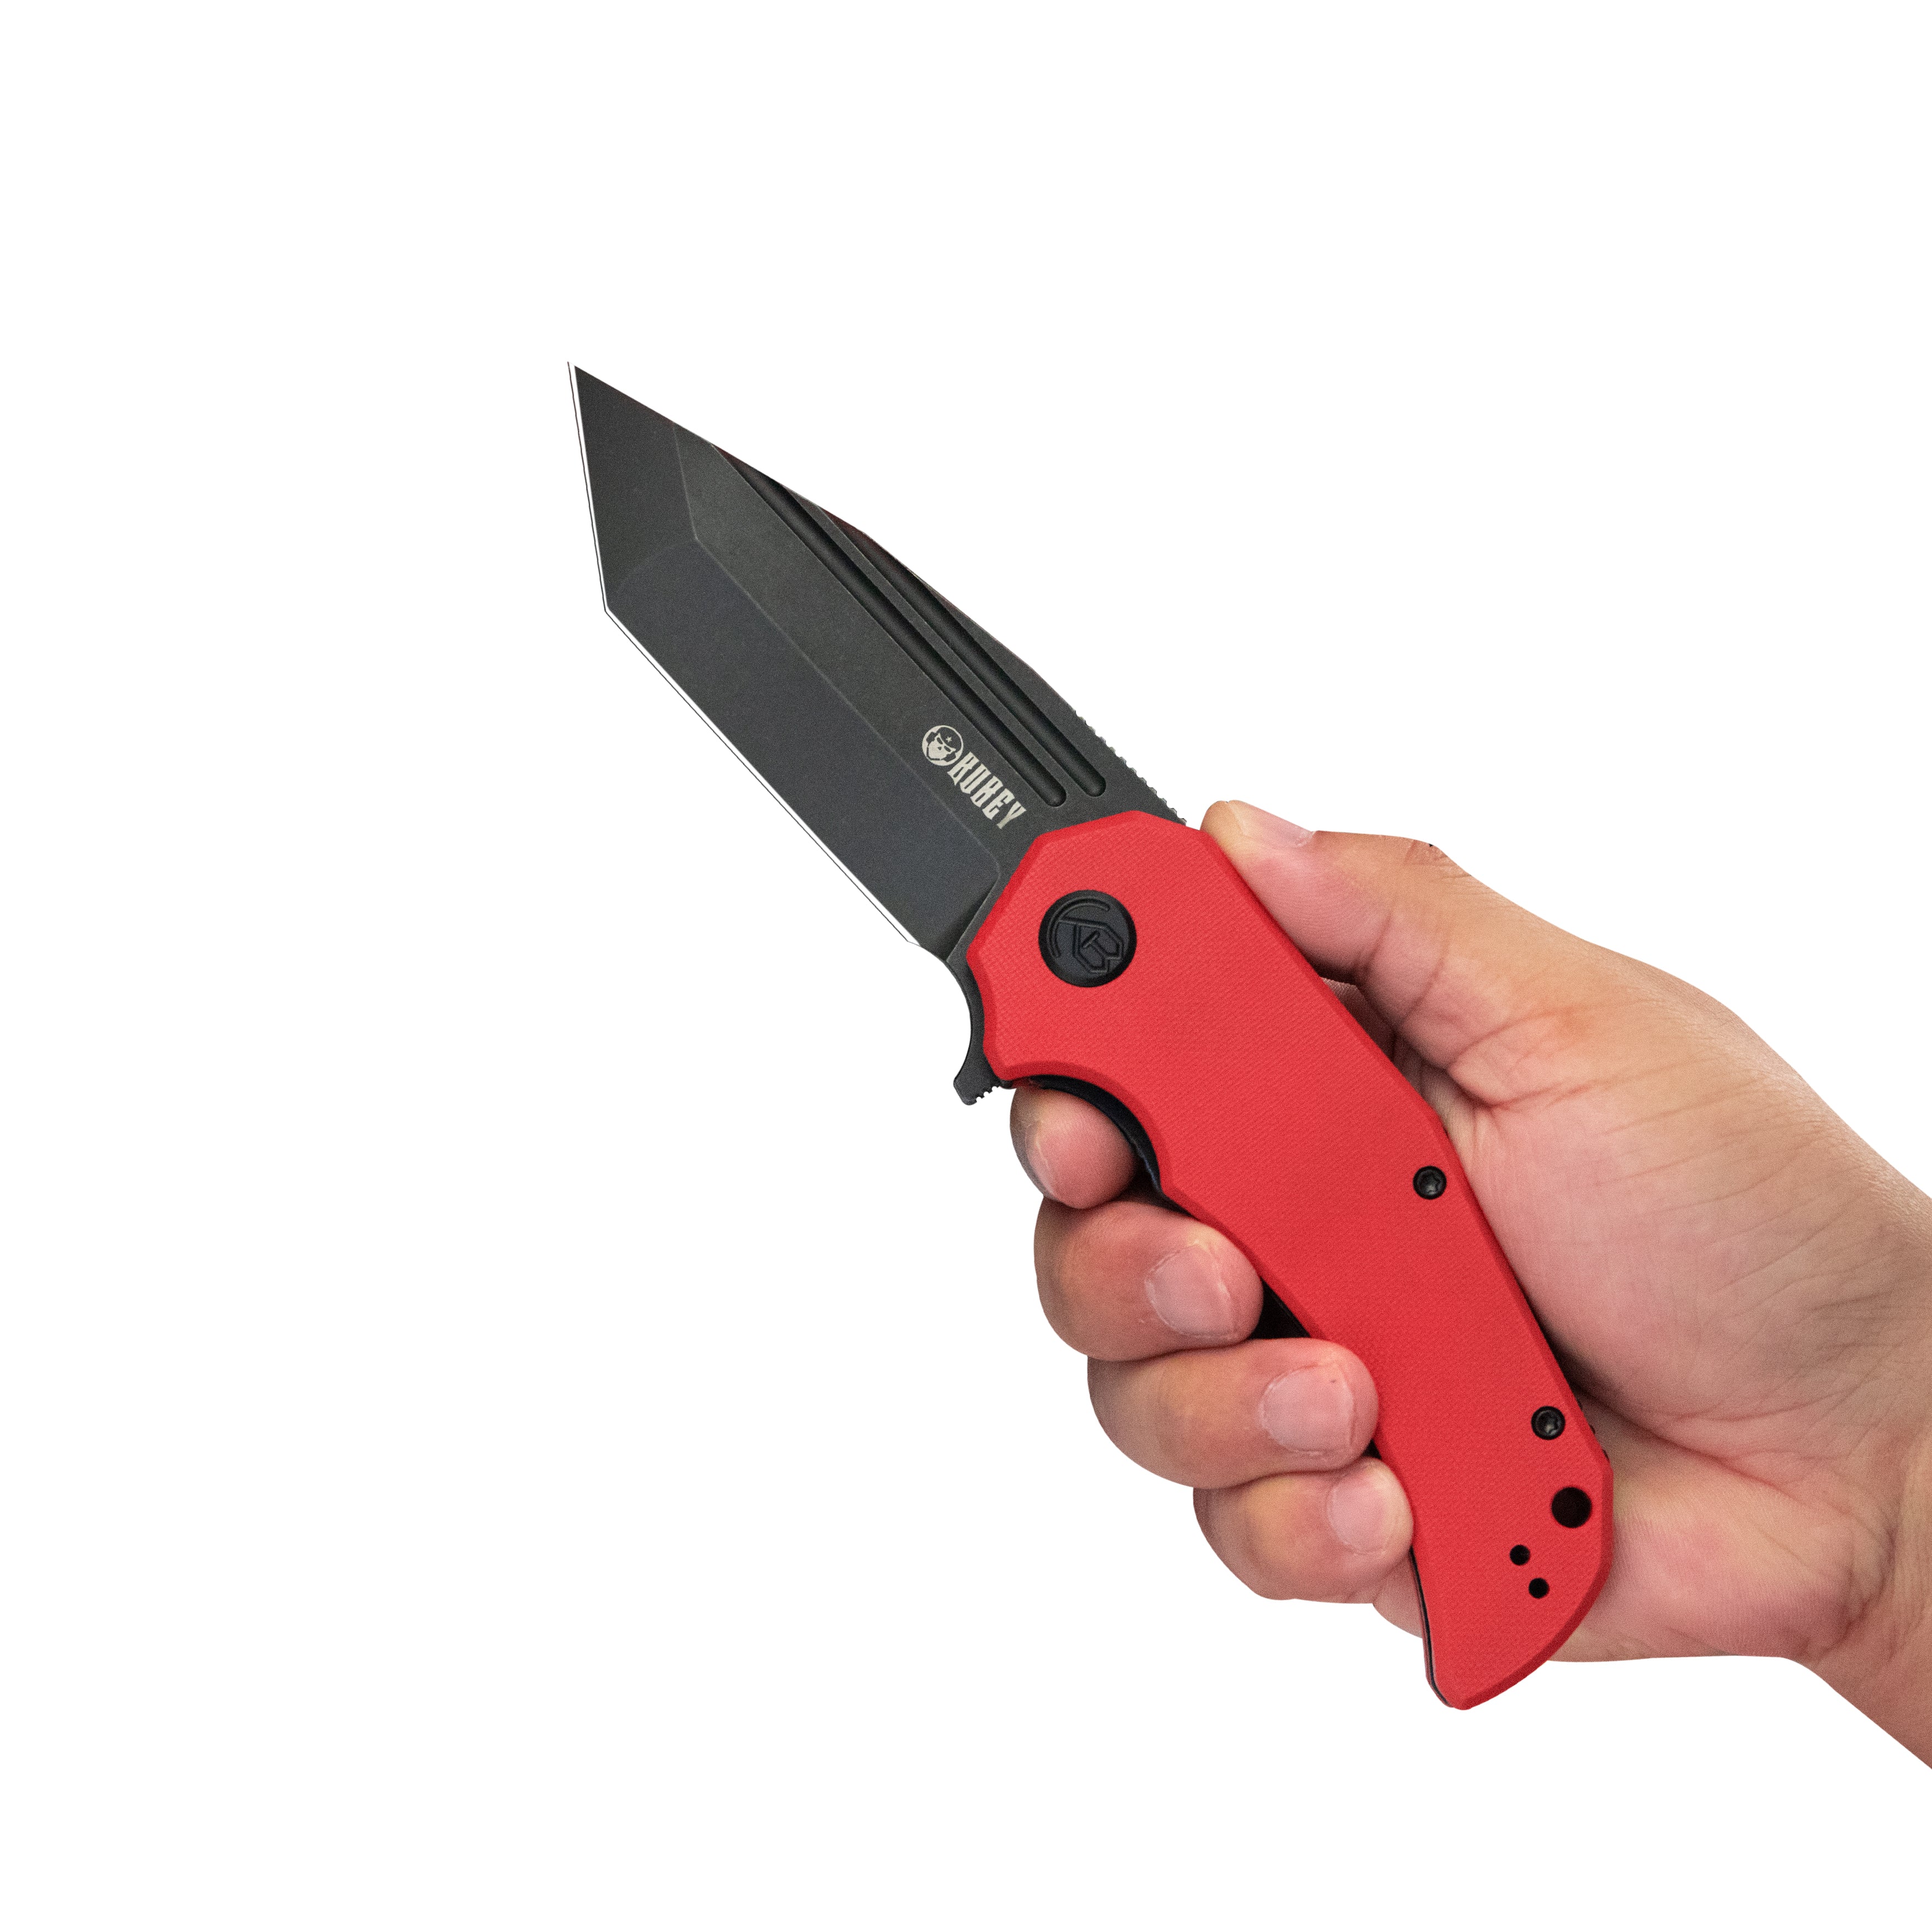 Kubey Mikkel Willumsen Design Bravo one Tanto Outdoor Folding Camping Knife Red G10 Handle 3.39" Blackwash AUS-10 KU318B